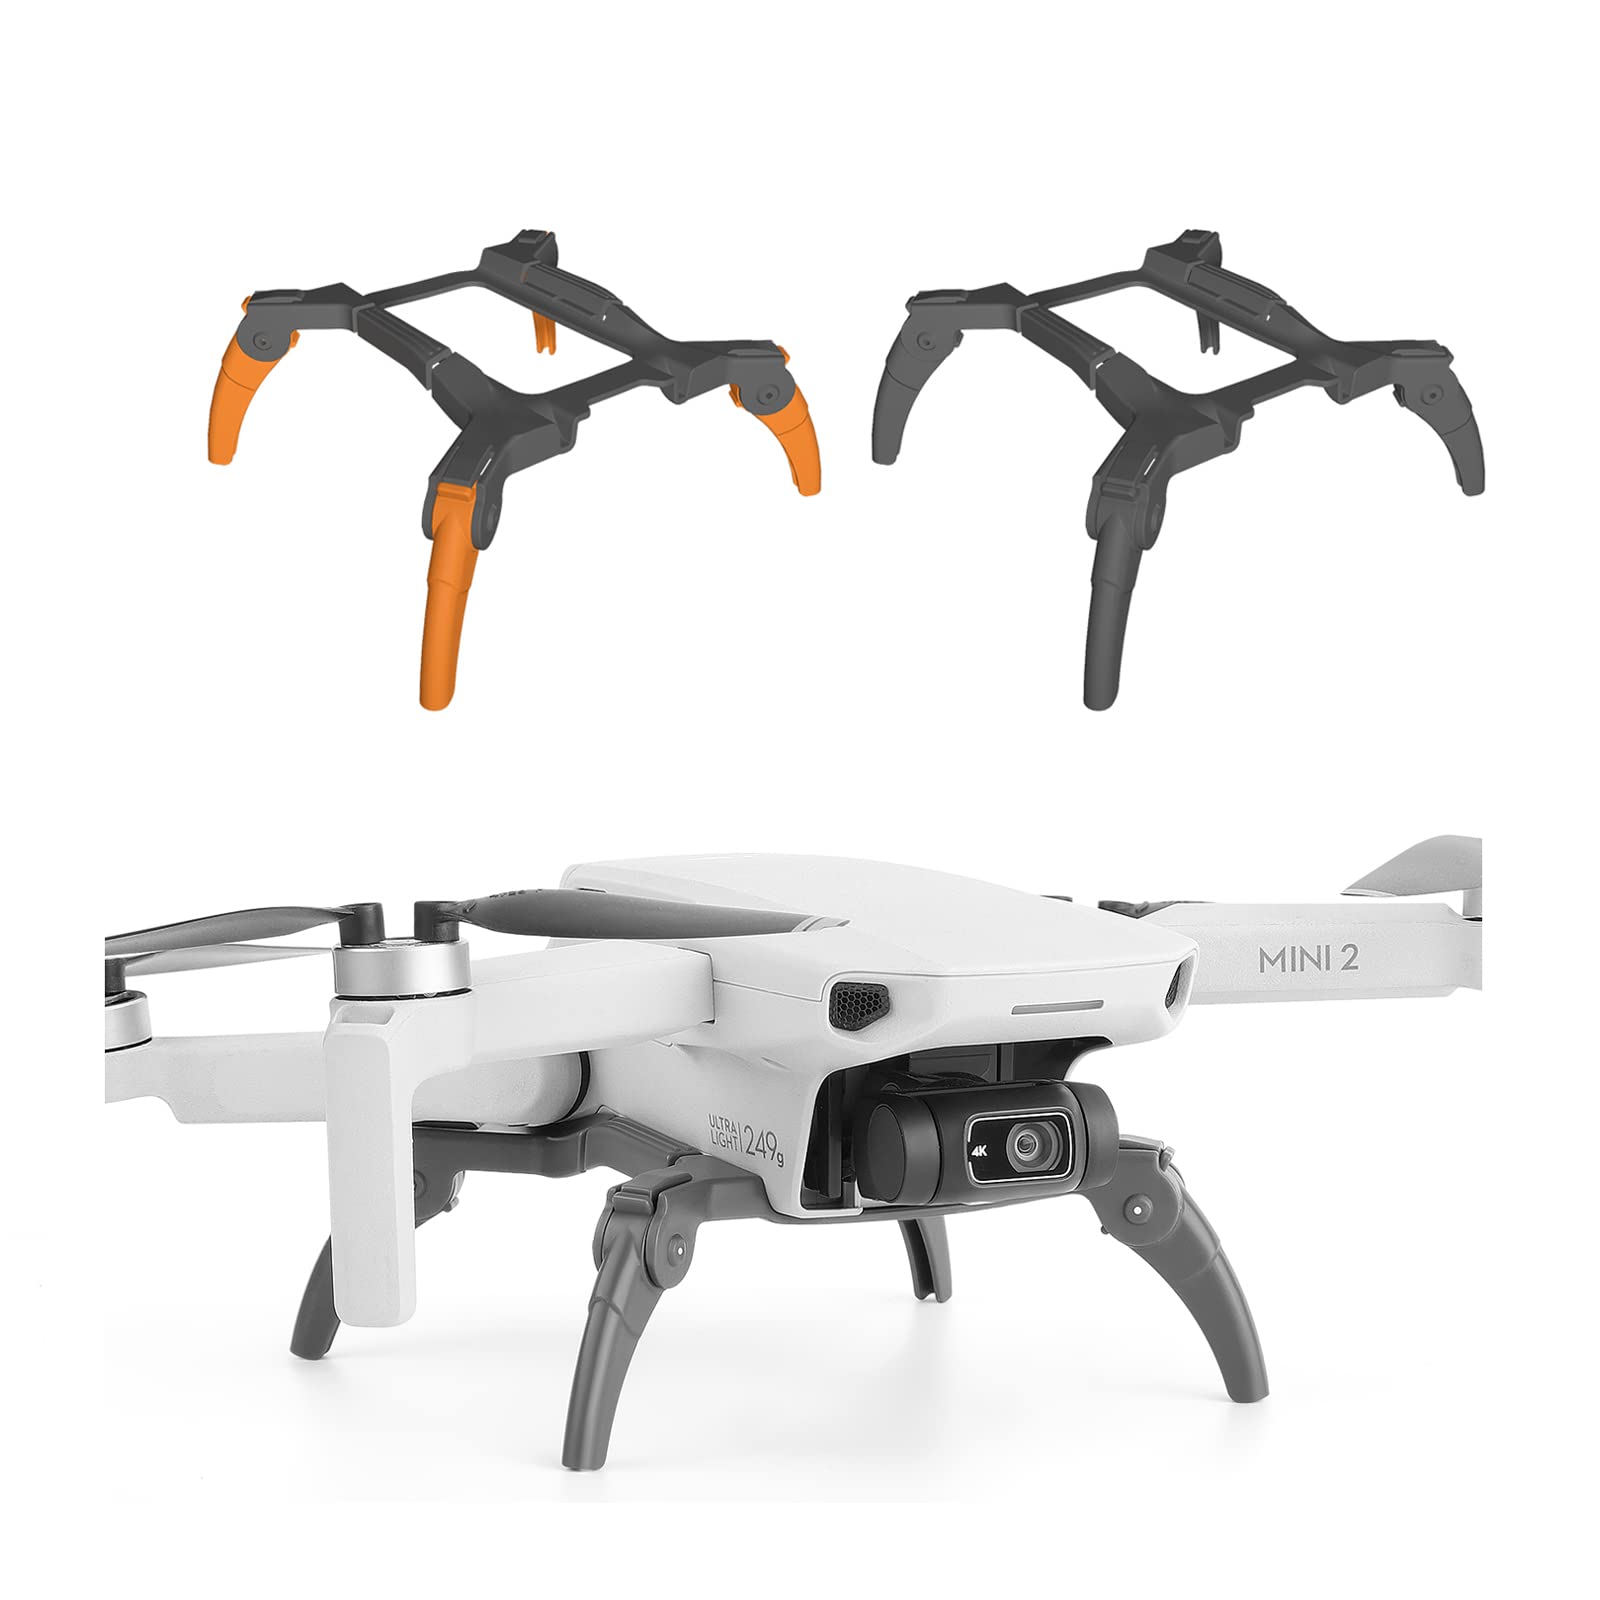 Landegestell für DJI Mini 2/Mavic Mini SE/Mavic Mini Drone Zubehör, Erweiterung Landefüße Landegestell Beine Landing Gear Fahrwerk für DJI Mini 2/Mavic Mini SE/Mavic Mini (Orange) von ZJRXM Zubehör für DJI Drone